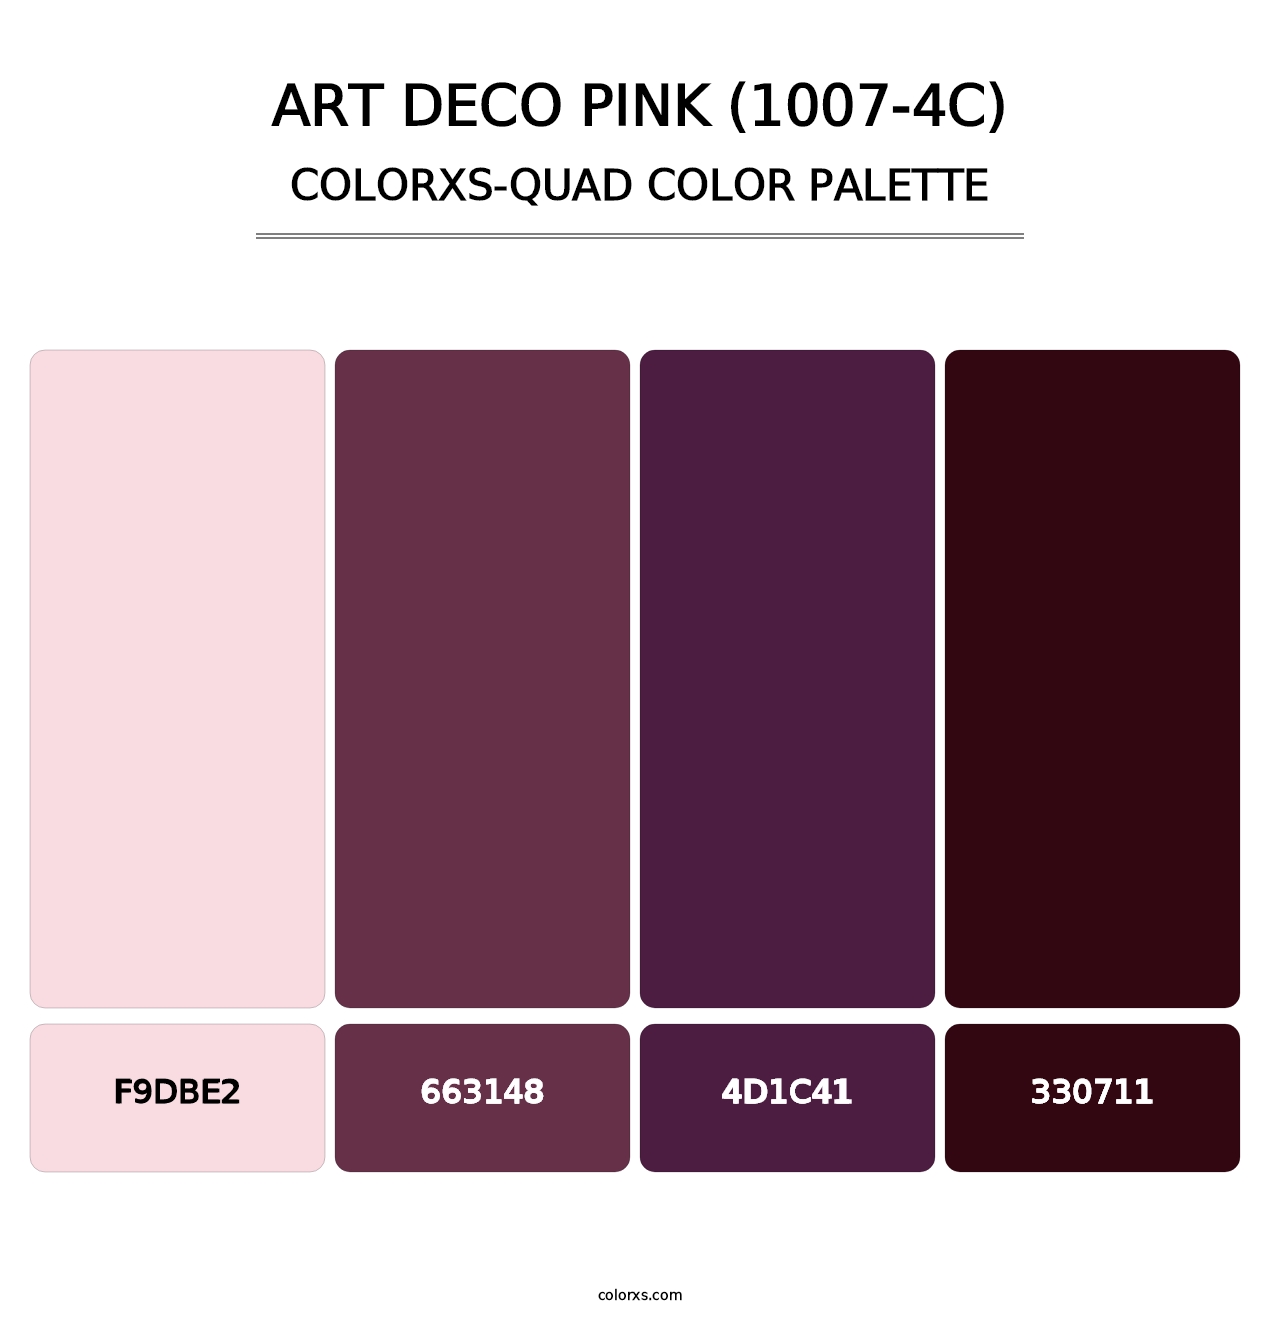 Art Deco Pink (1007-4C) - Colorxs Quad Palette